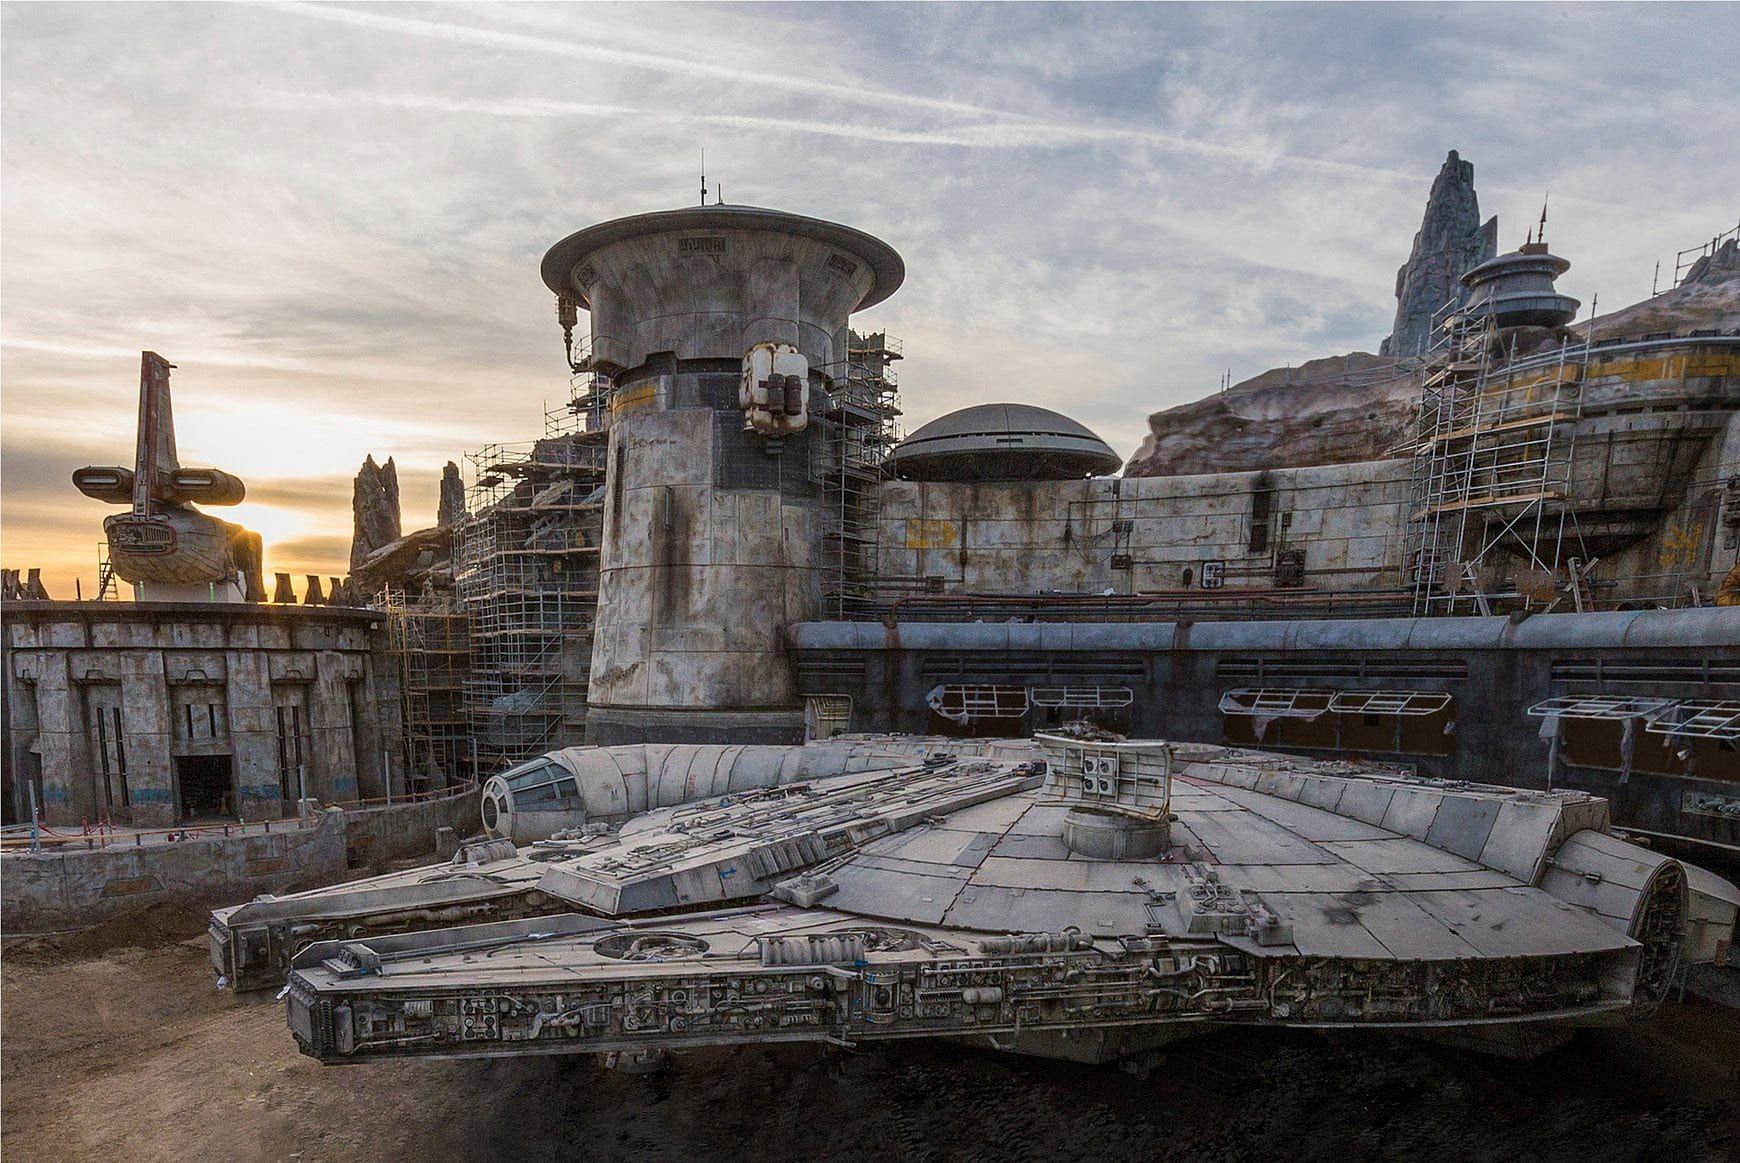 Más temprano Ennegrecer Mil millones Star Wars Galaxy's Edge Disney - Parque Atracciones Star Wars